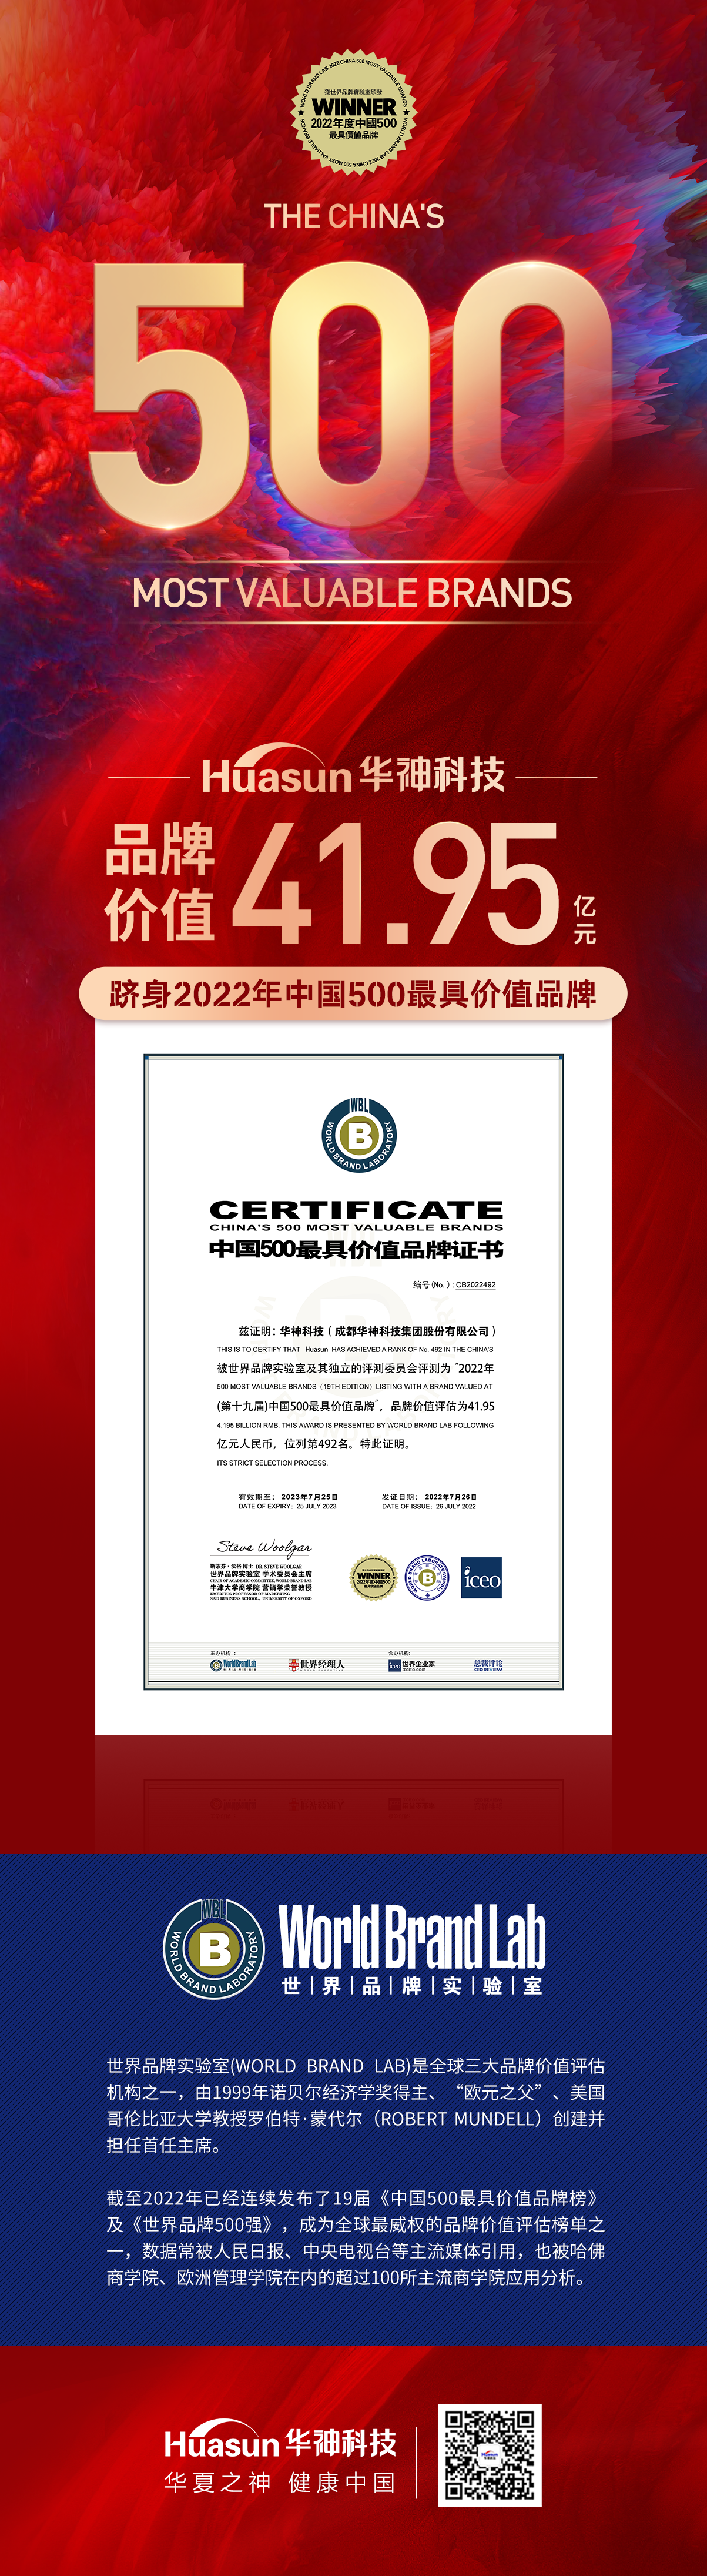 香港正牌挂牌官方网站首次荣膺中国500最具价值品牌 品牌价值达41.95亿